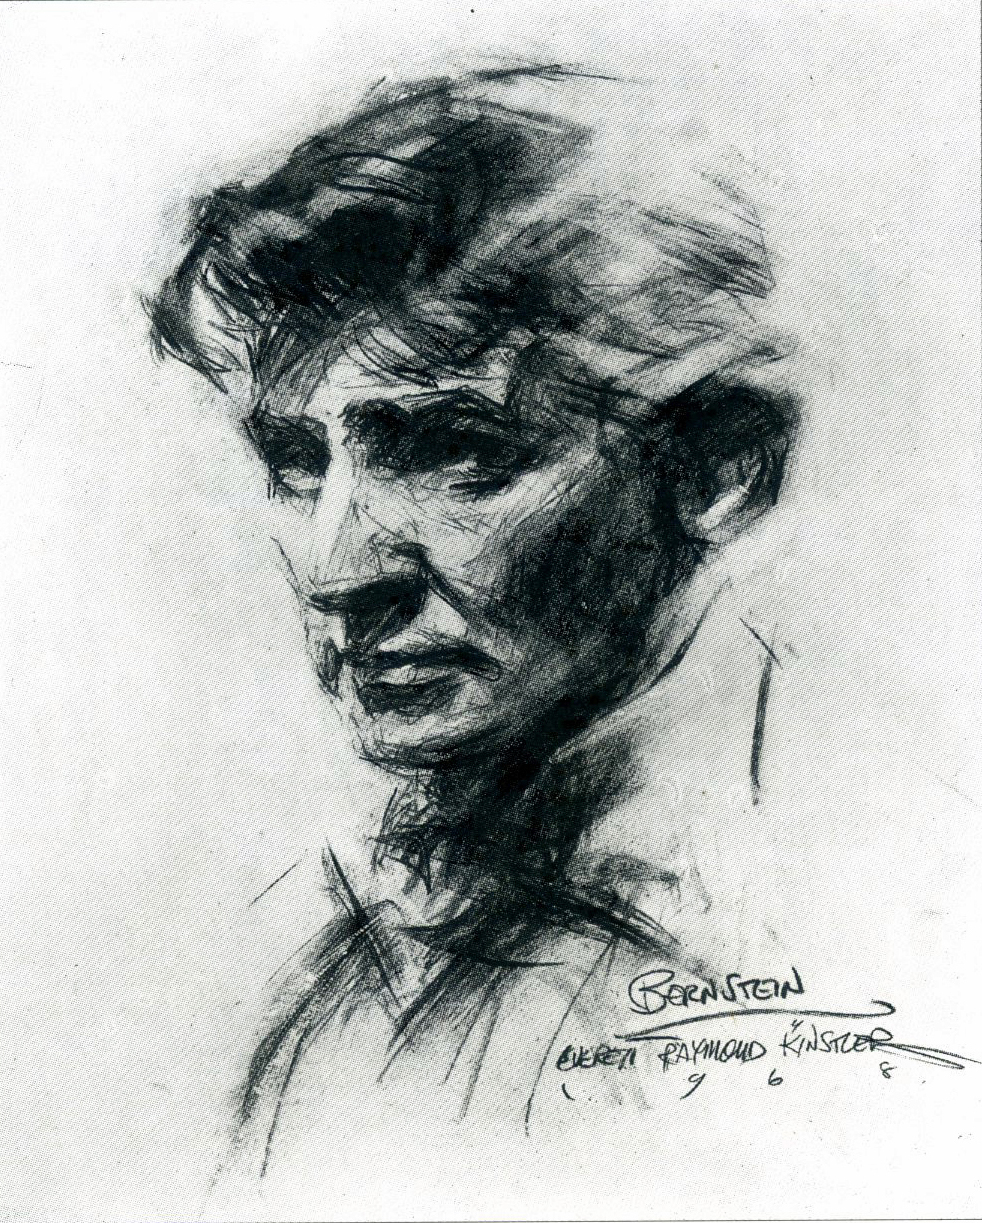 New-Art: Leonard Bernstein, By Everett Raymond Kinstler